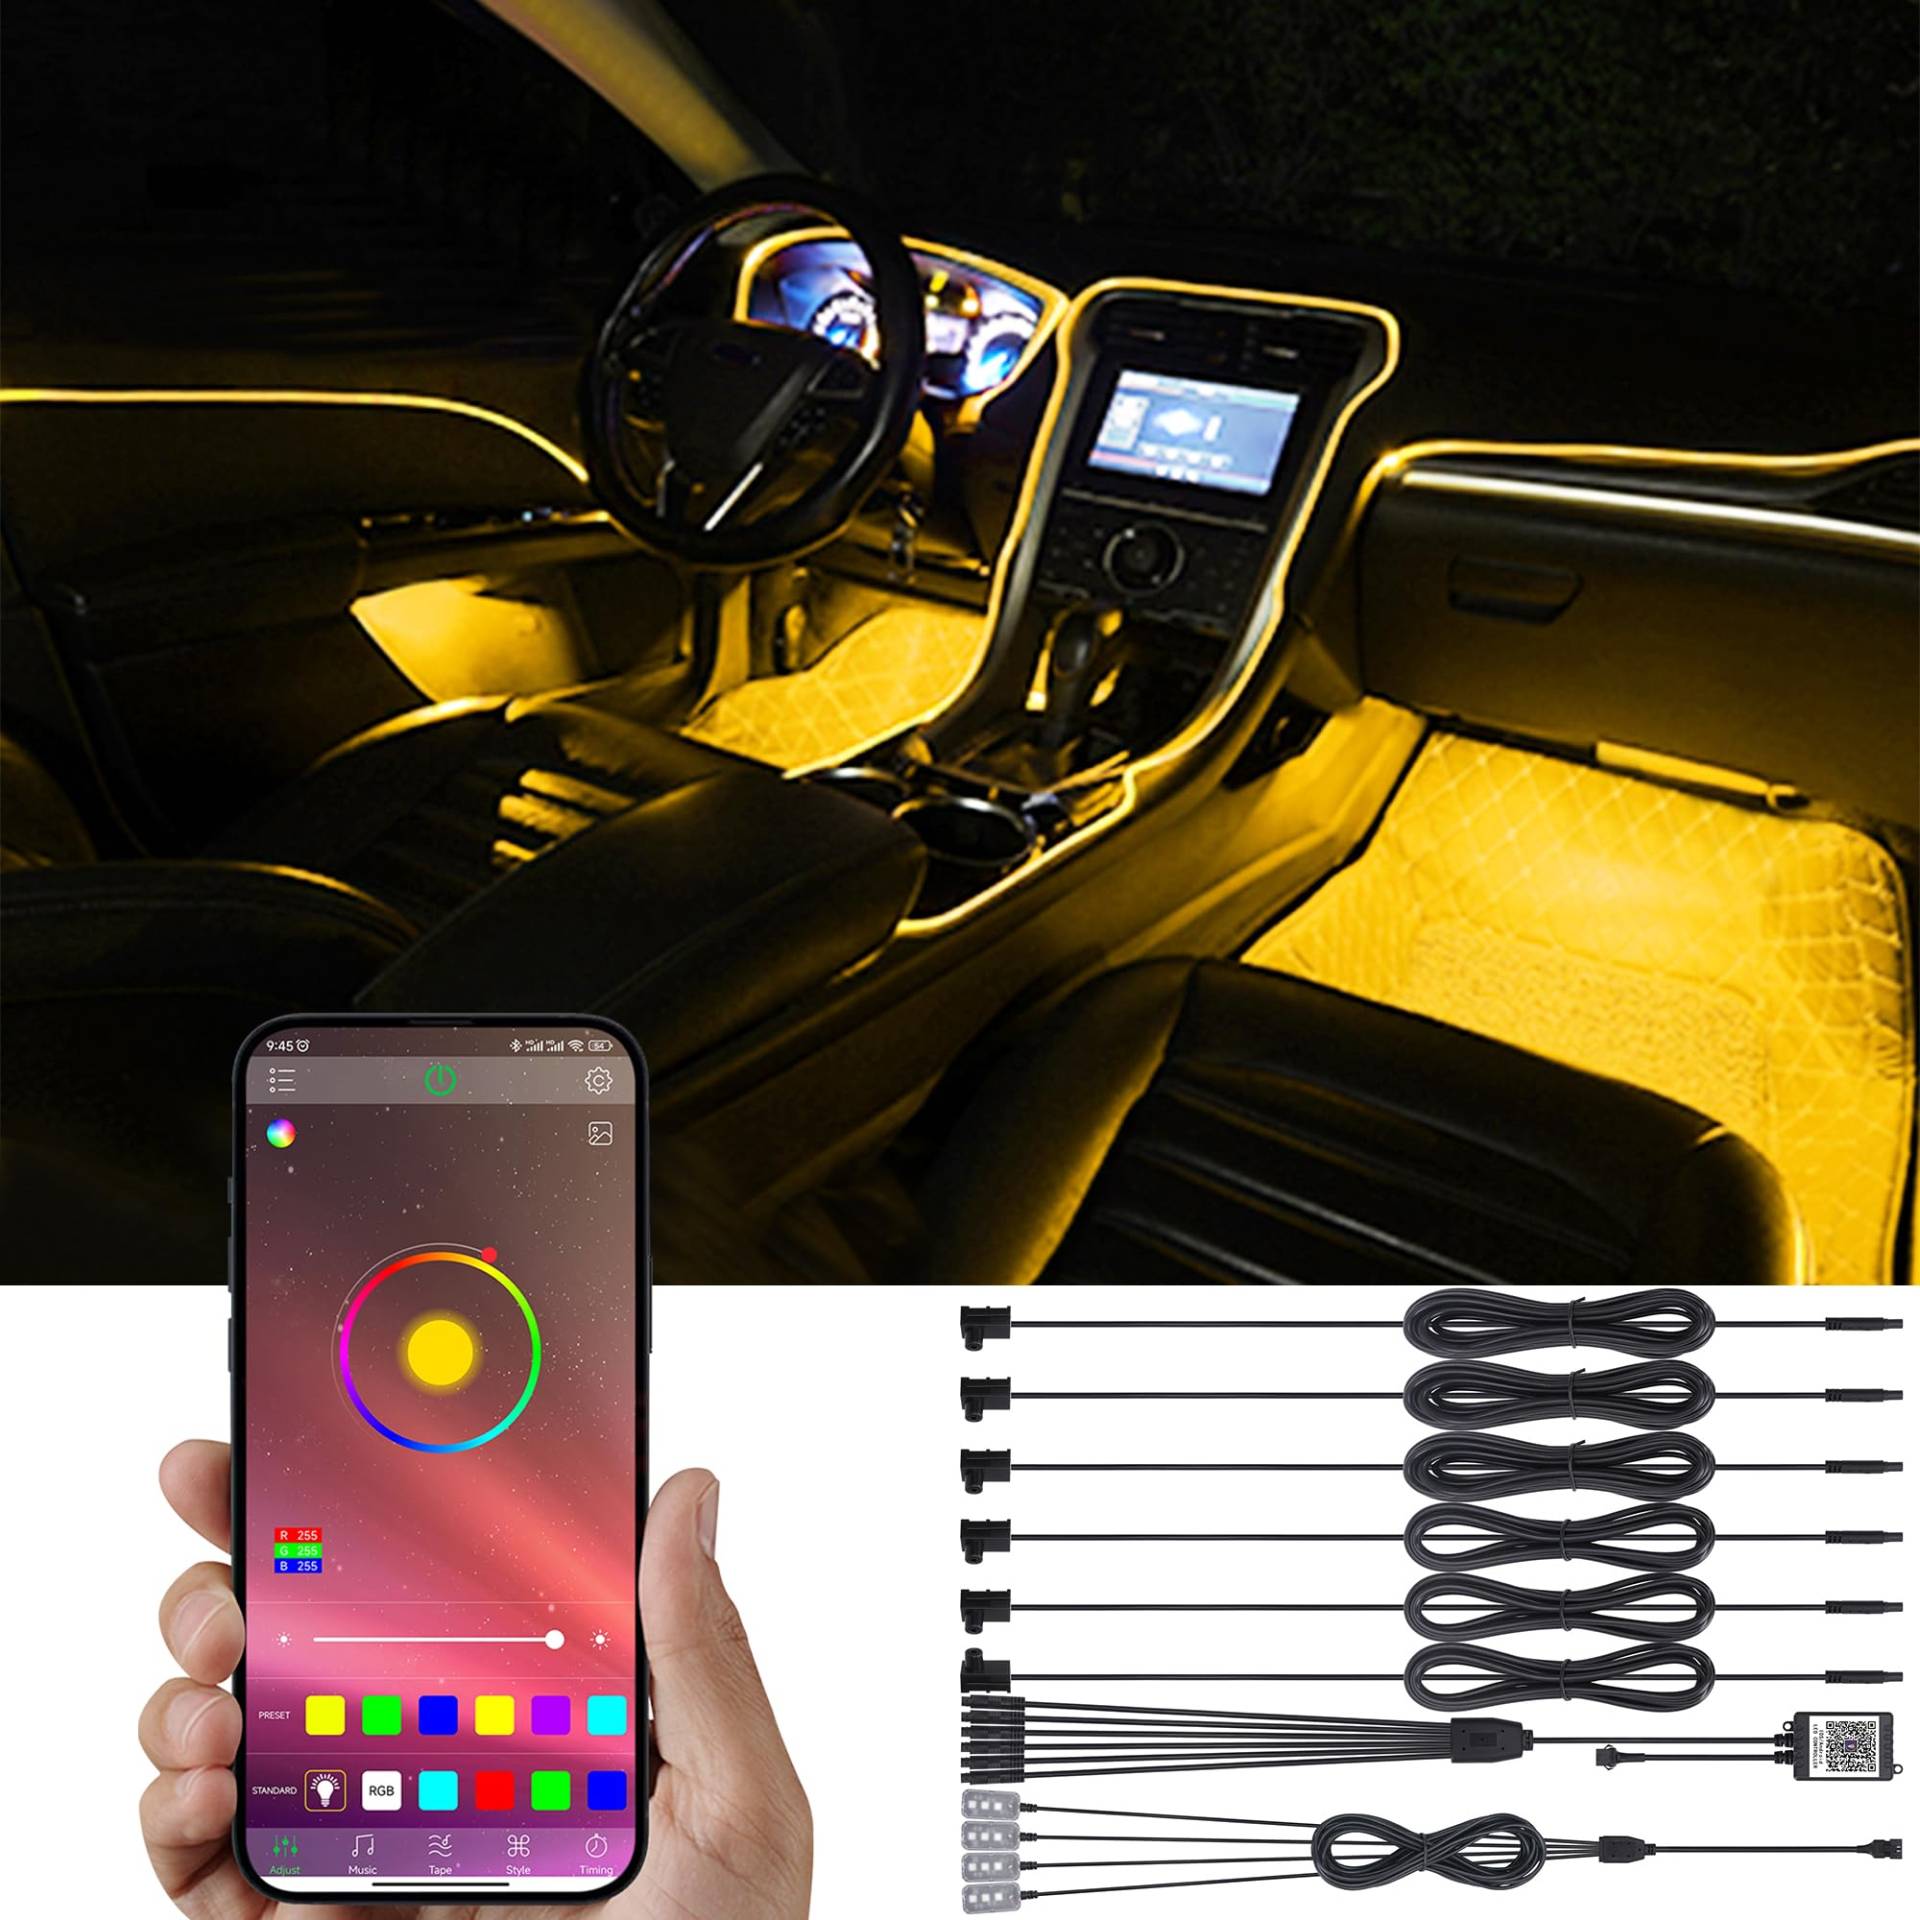 TABEN Auto-Umgebungsbeleuchtungs-Kit, 6 in 1 mit 8m Fiber Optic Multicolored Fußraum-Atmosphären-Beleuchtungs-Kit, Musik-Rhythmus-Sound Aktive Speicherfunktion Bluetooth APP-Steuerung DC 12V von TABEN